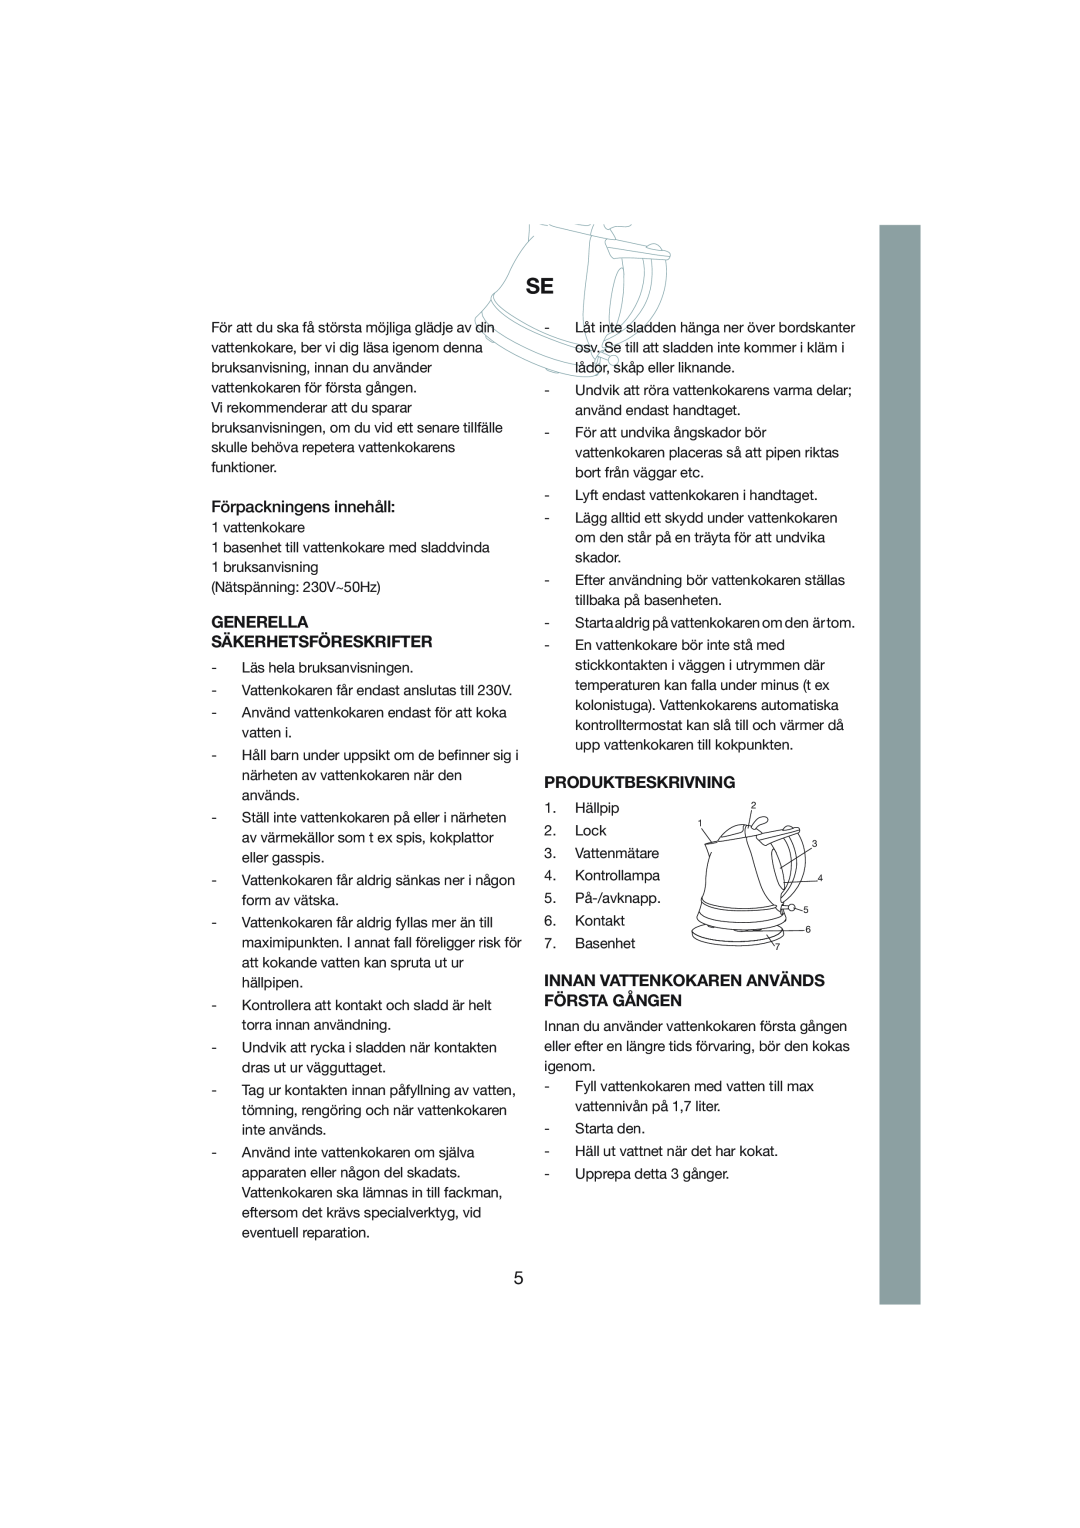 Melissa 245-014 manual Förpackningens innehåll, Generella Säkerhetsföreskrifter, Produktbeskrivning 